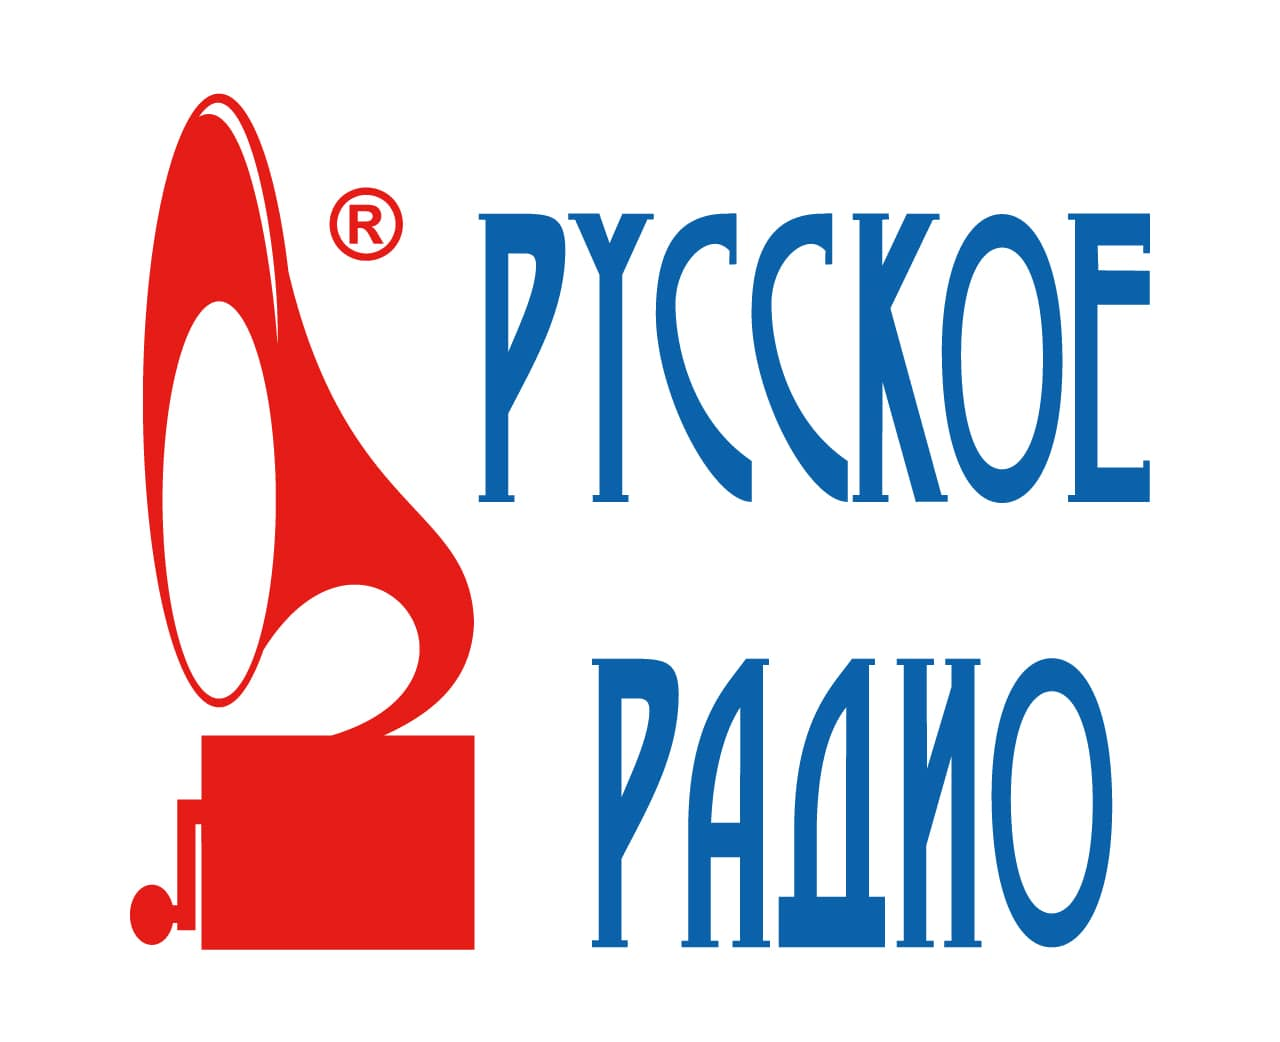 Russkoe. Русское радио. Русское радио эмблема. Логотипы радиостанций.